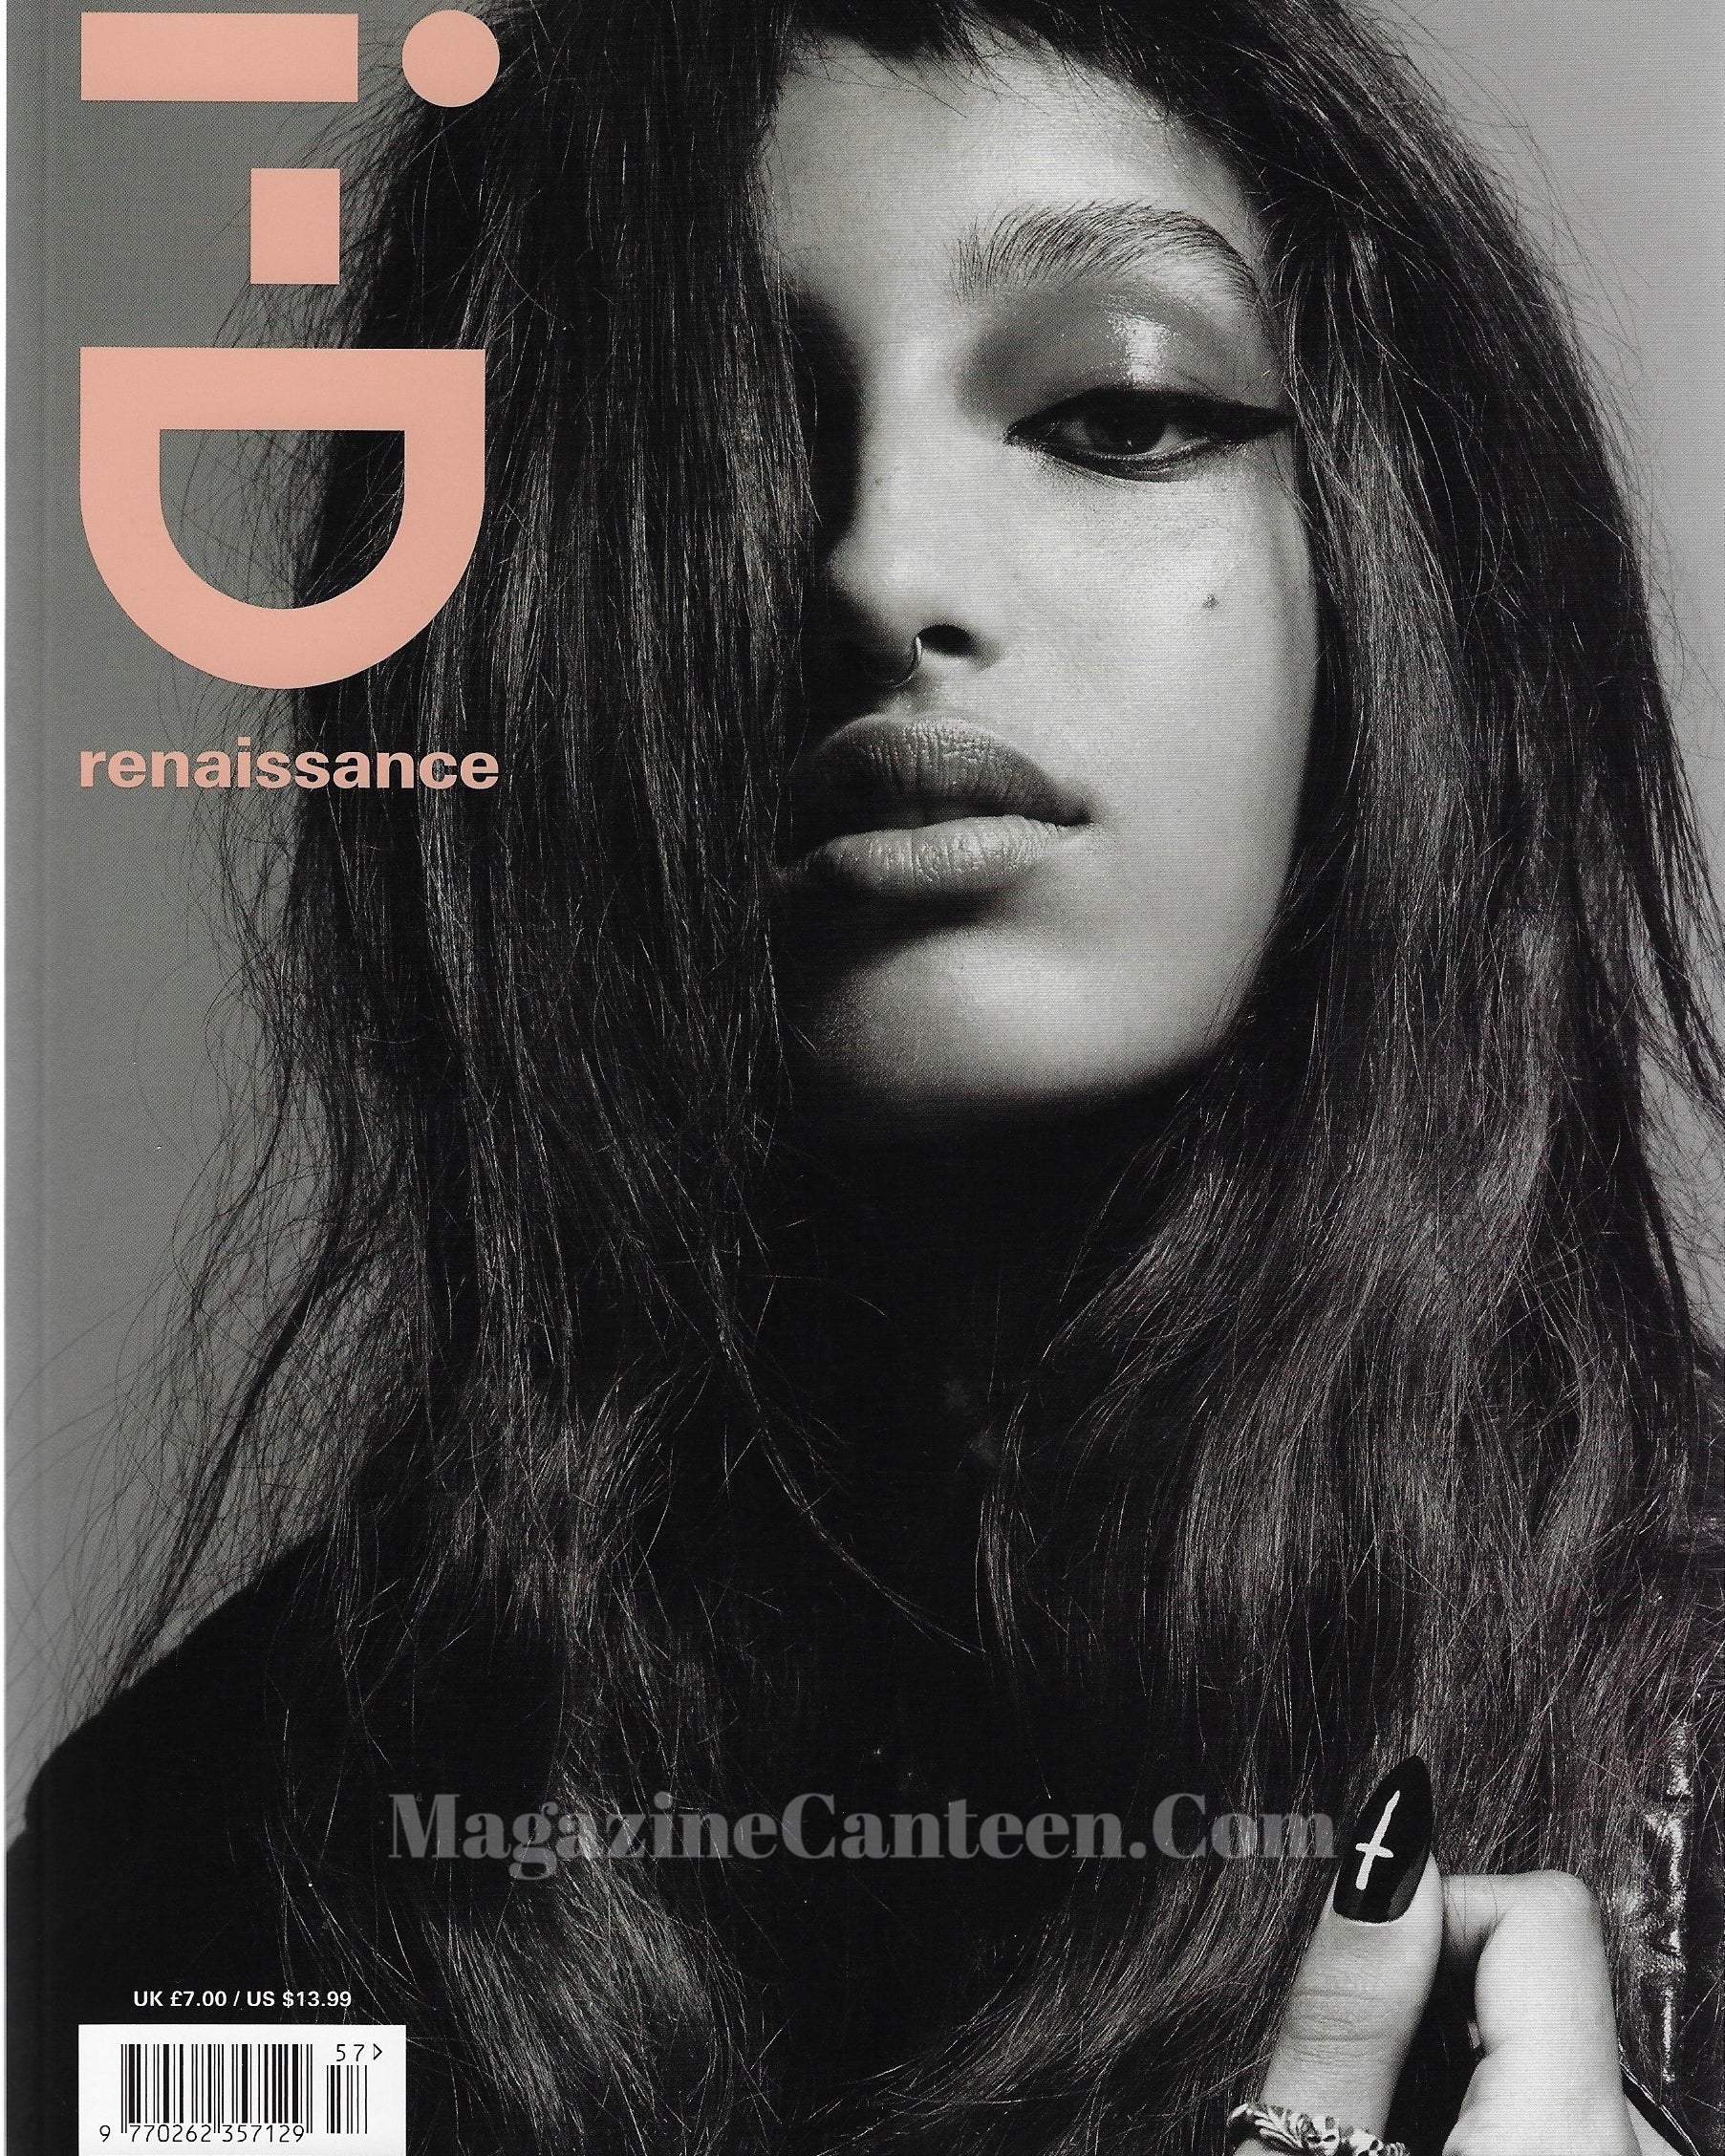 I-D Magazine 357 - Mona Tougaard 2019